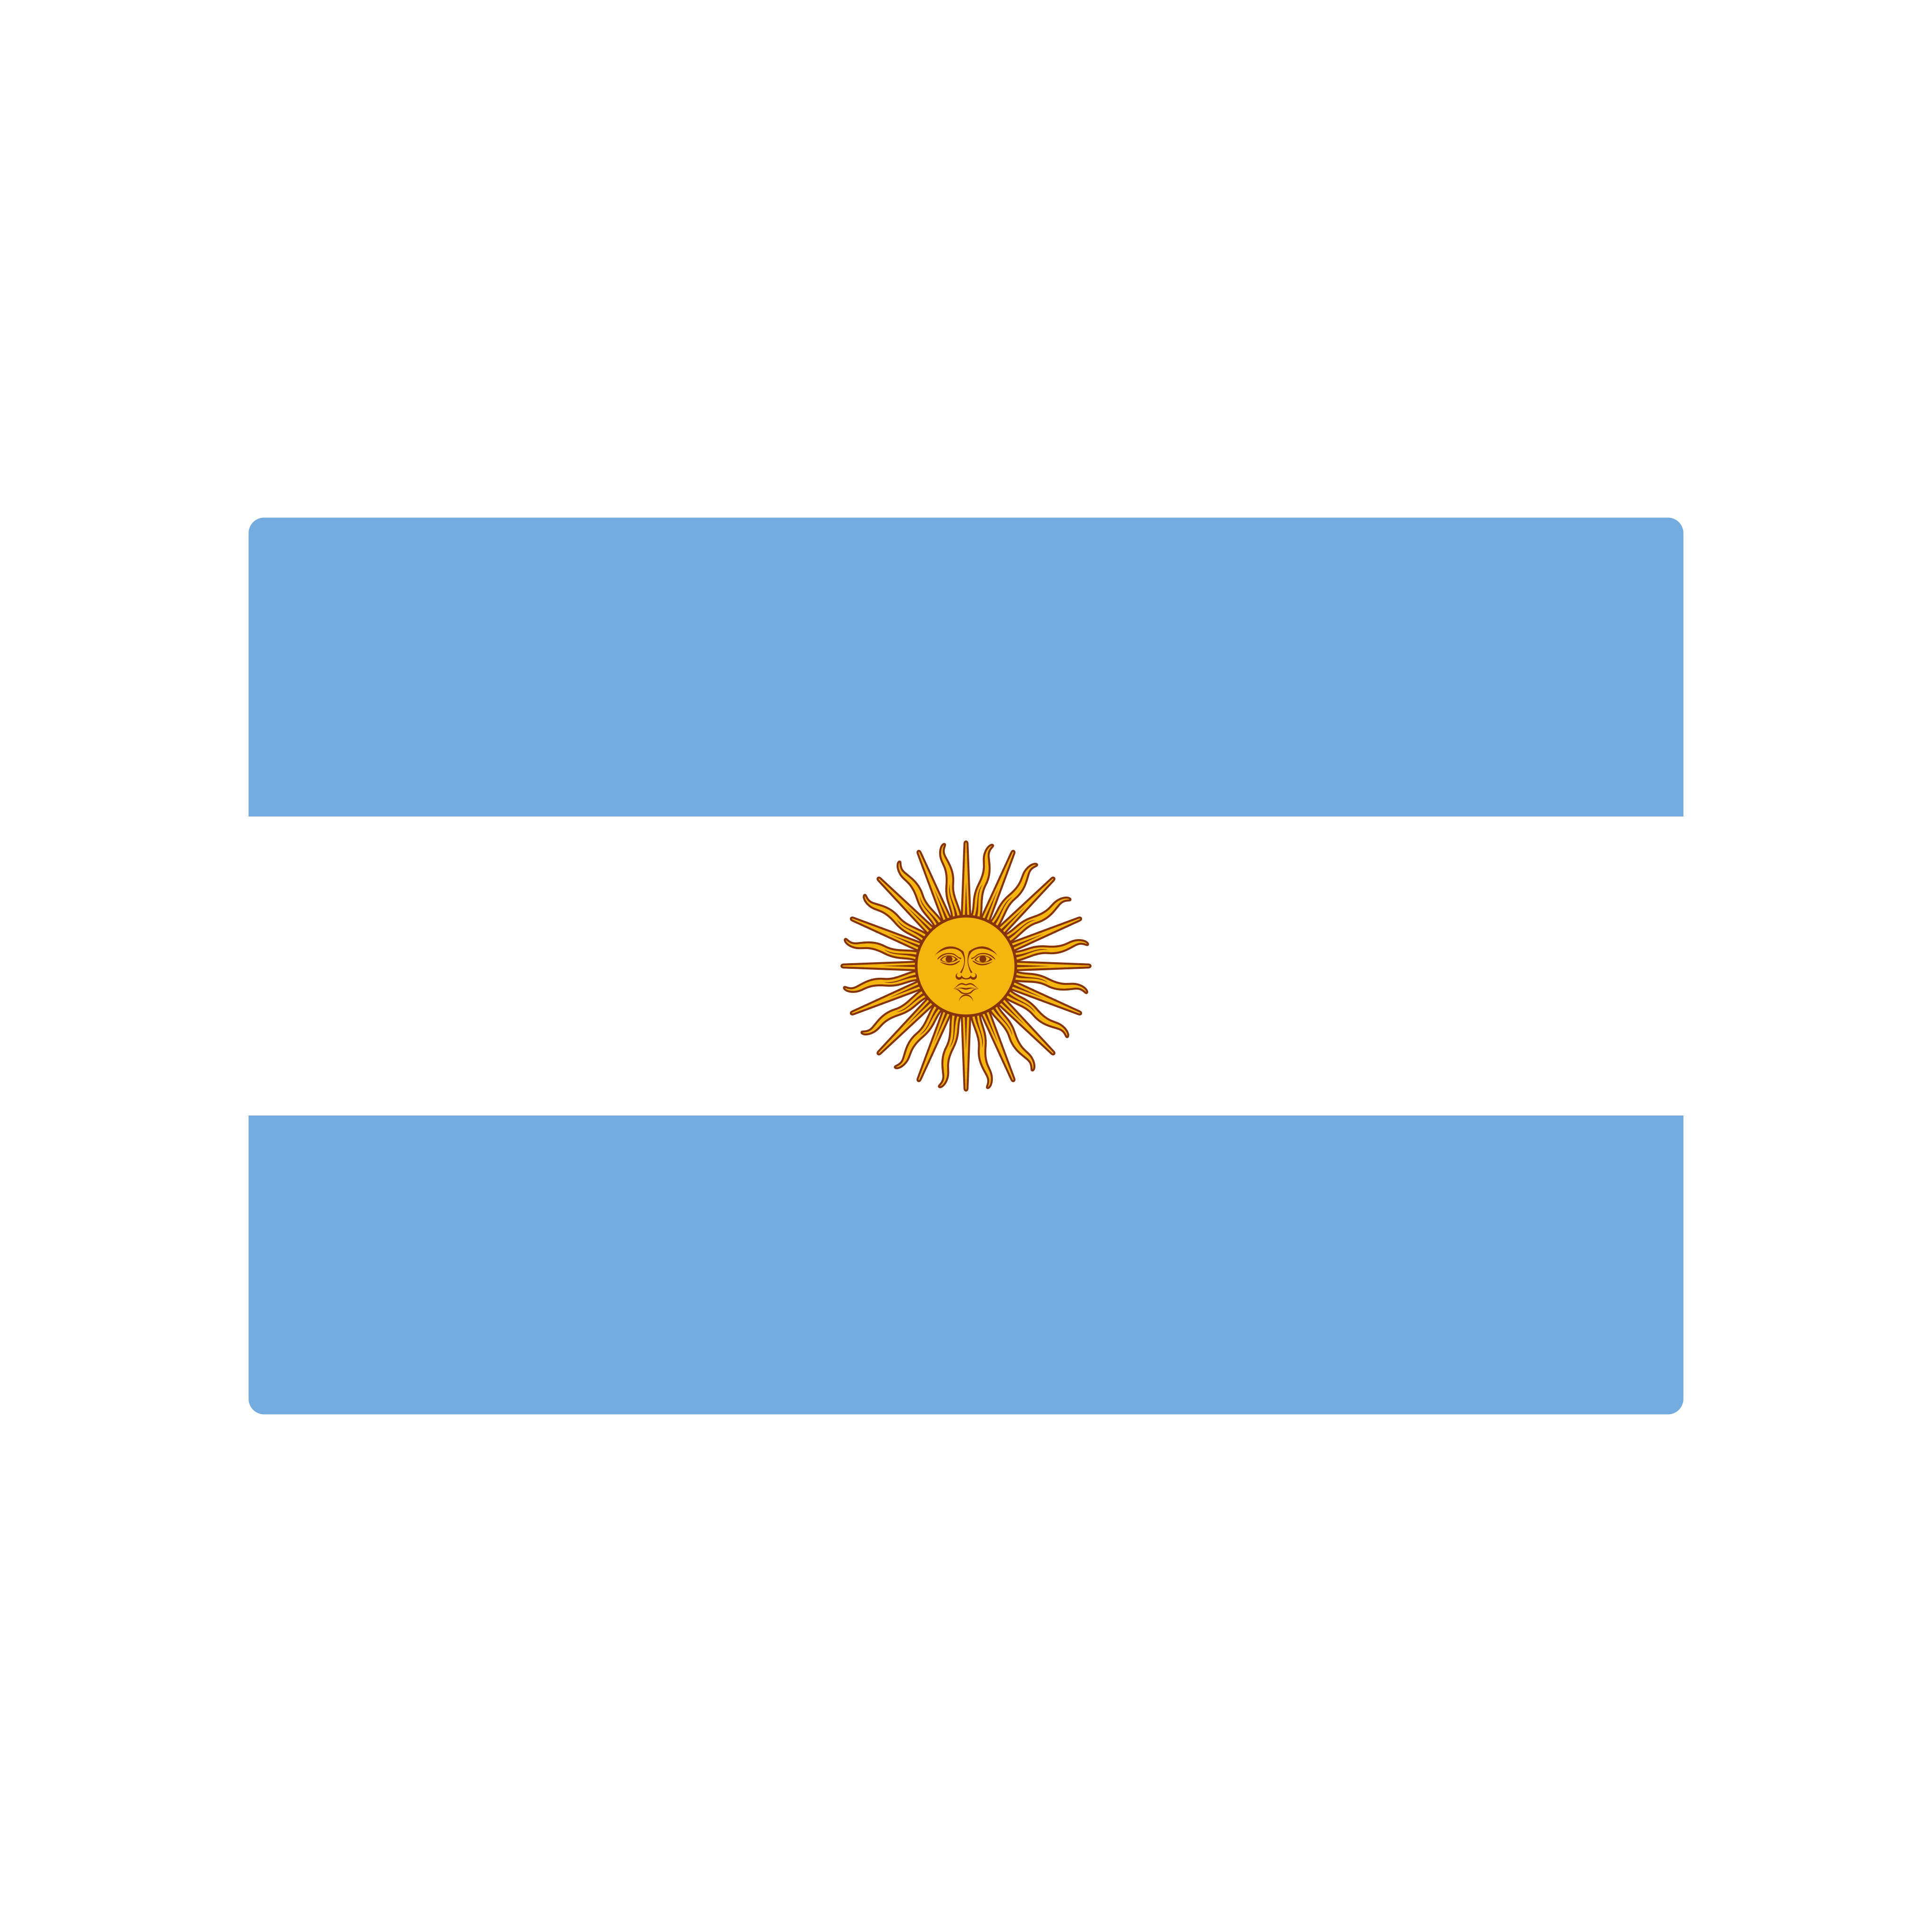  Bandera de la Argentina PNG.